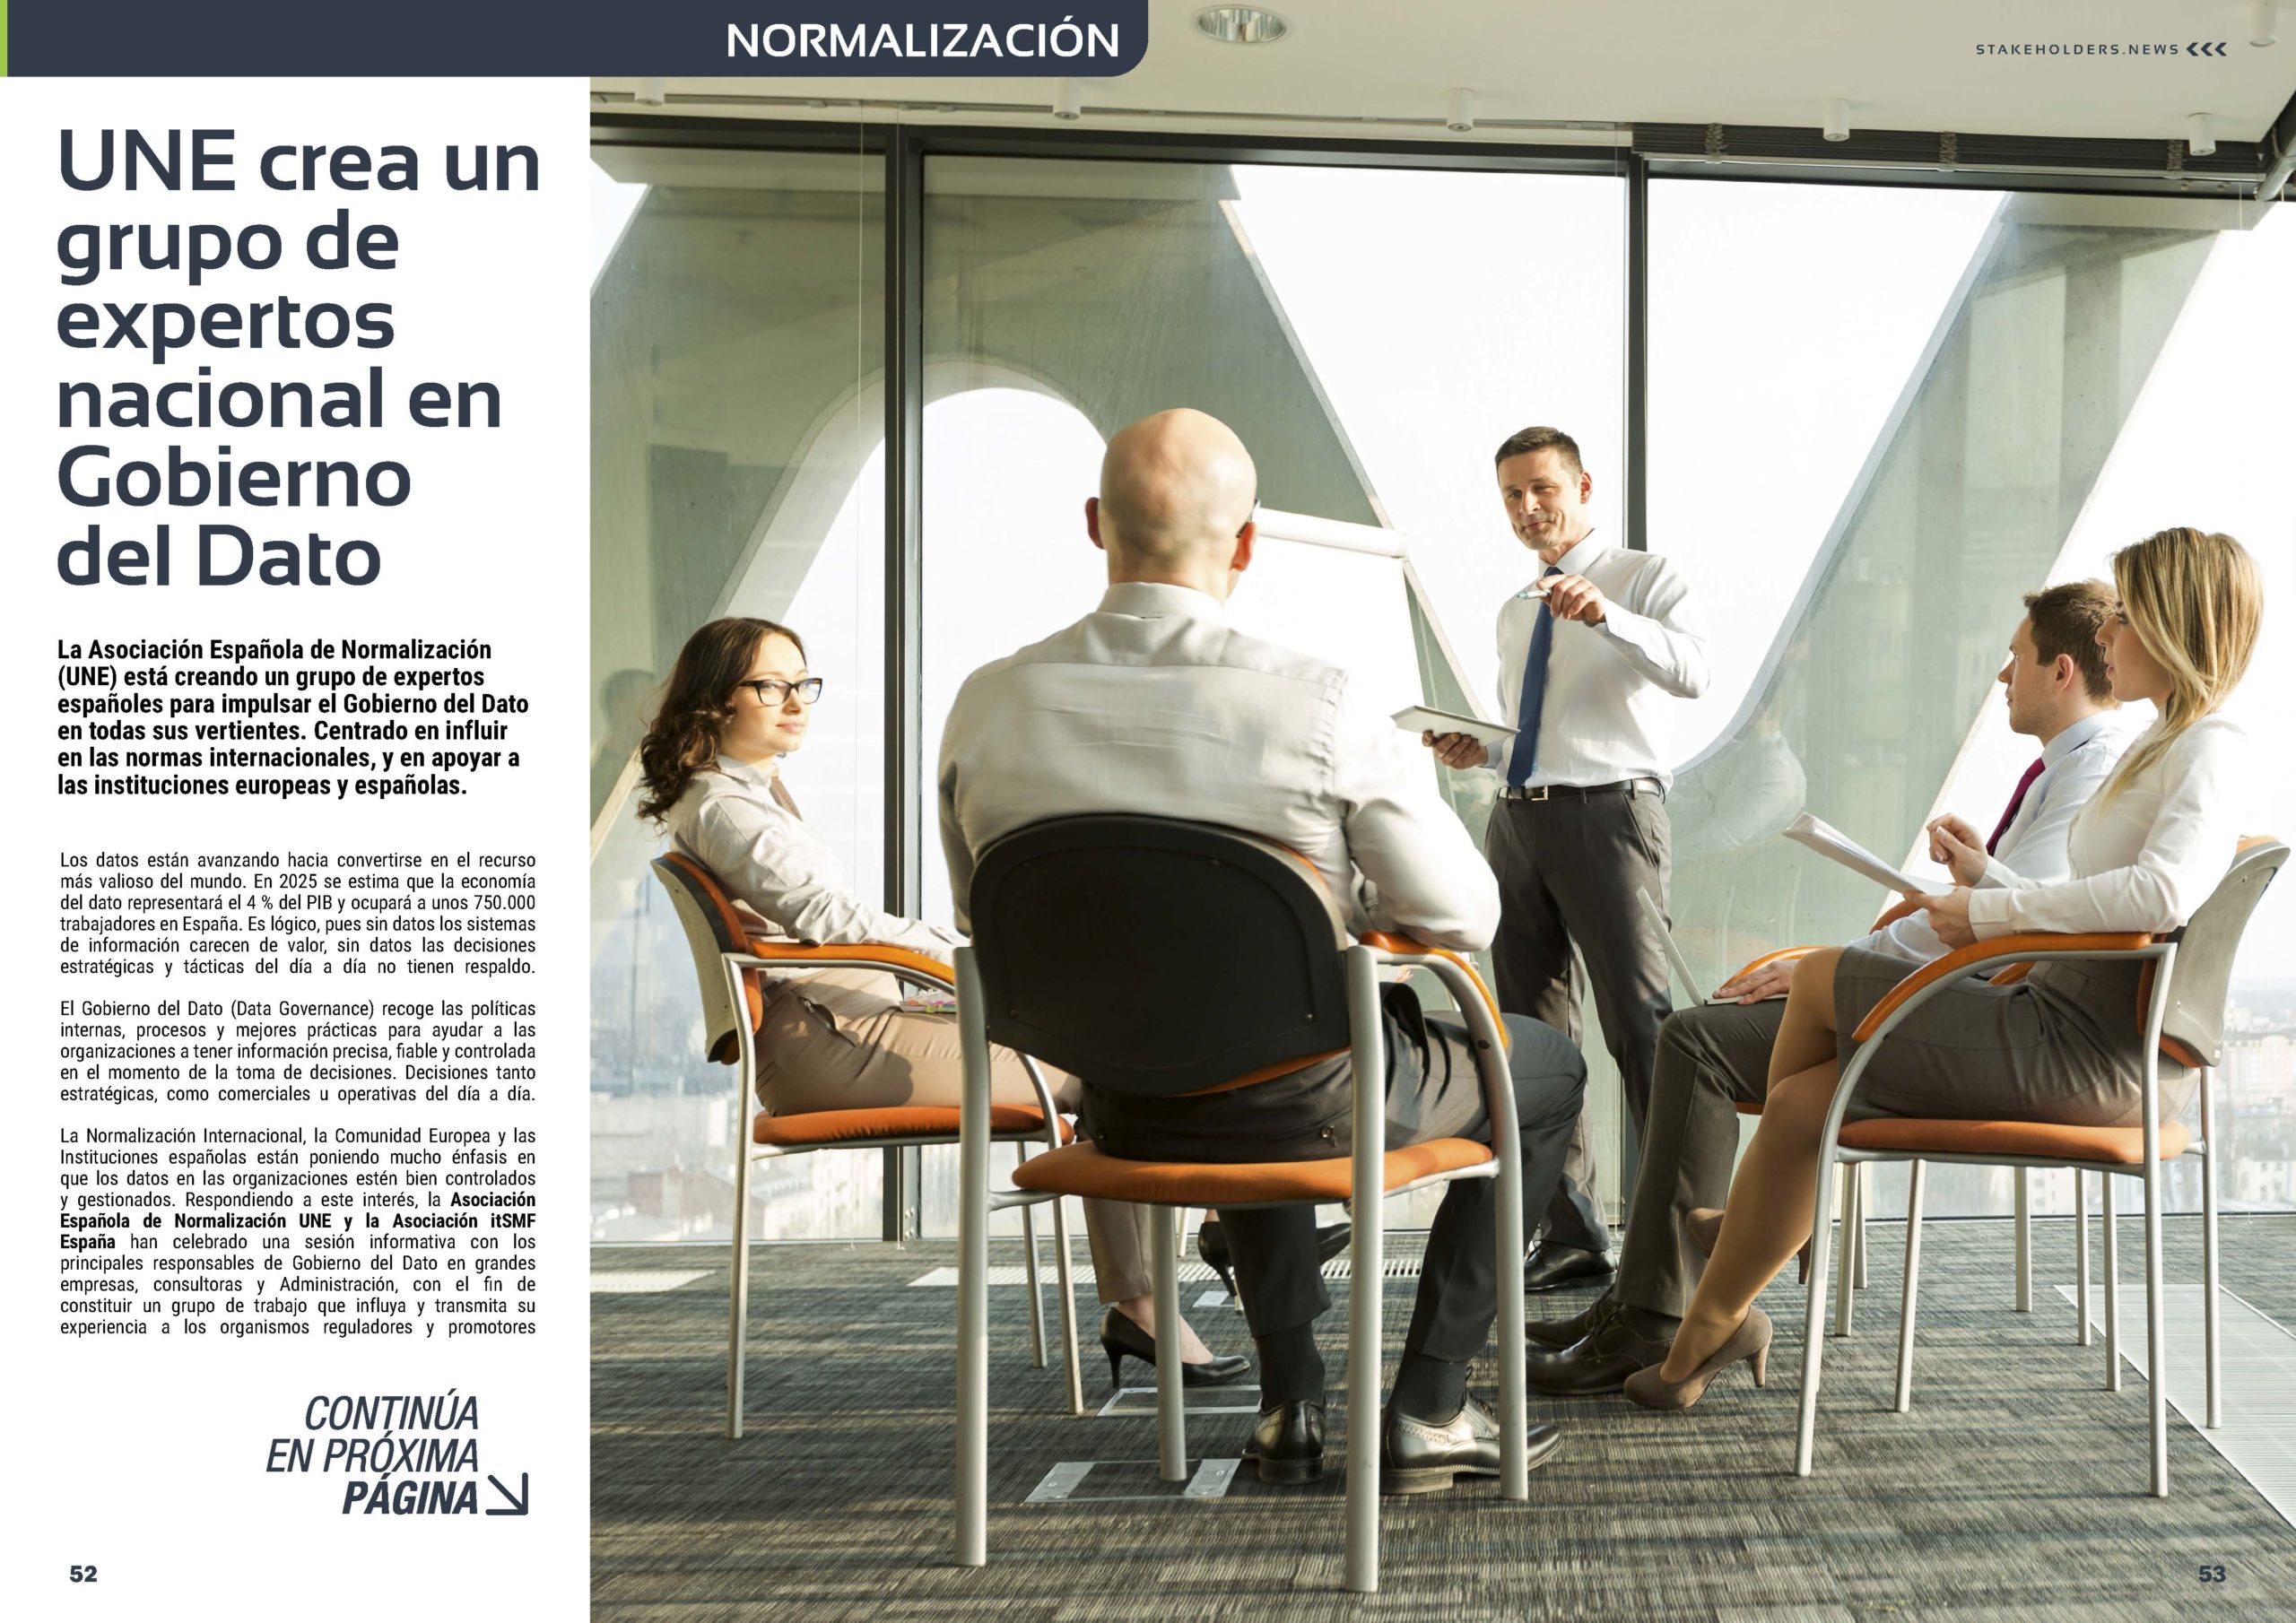 Artículo "UNE crea un grupo de expertos nacional en Gobierno del Dato" de UNE Asociación Española de Normalización en la Revista Stakeholders.news